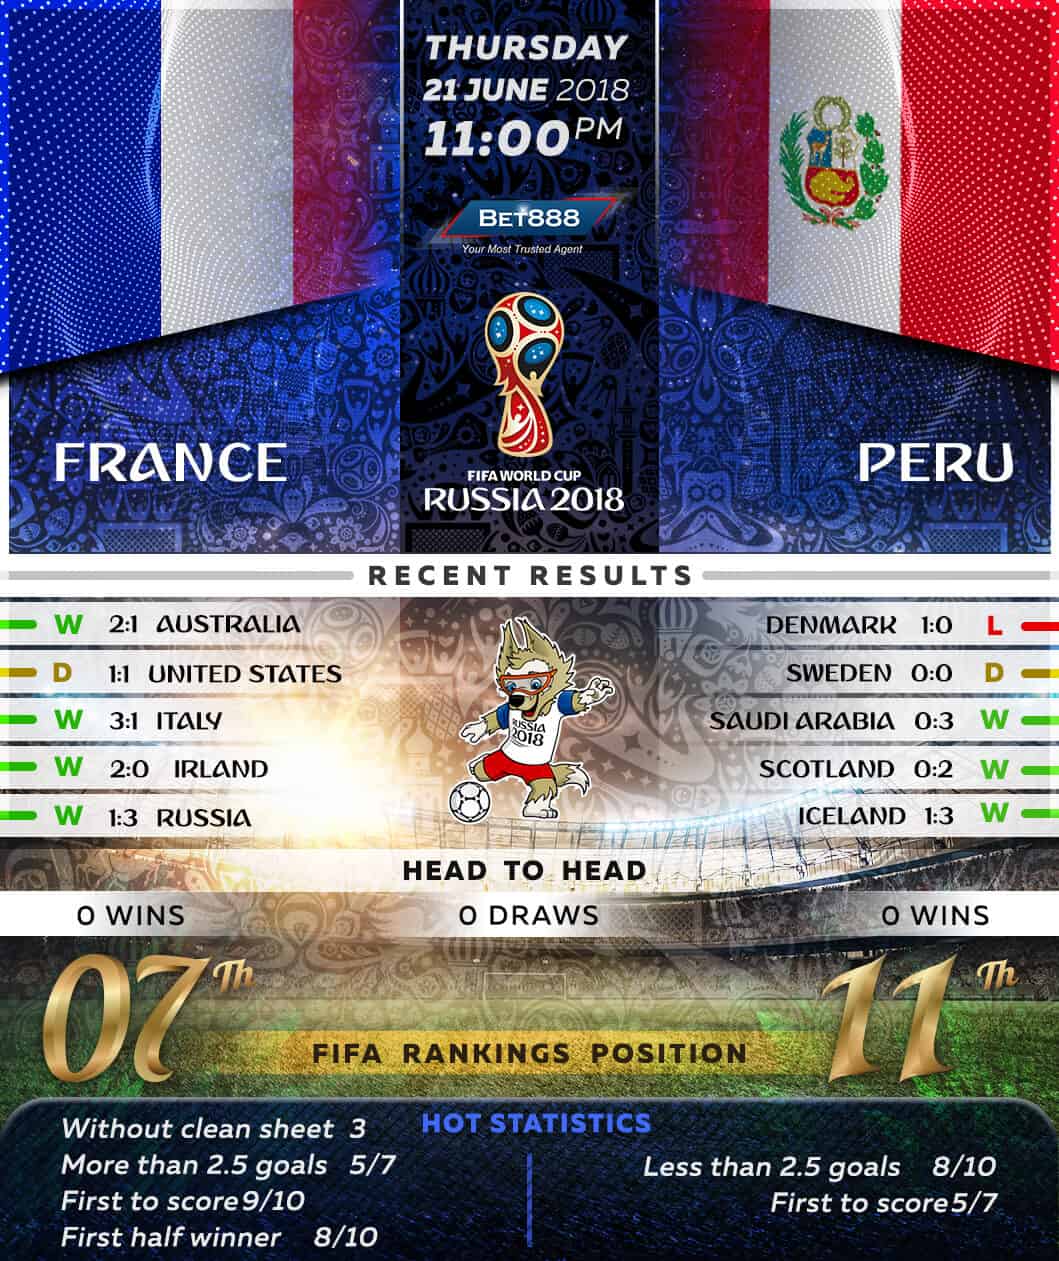 France vs Peru 21/06/18